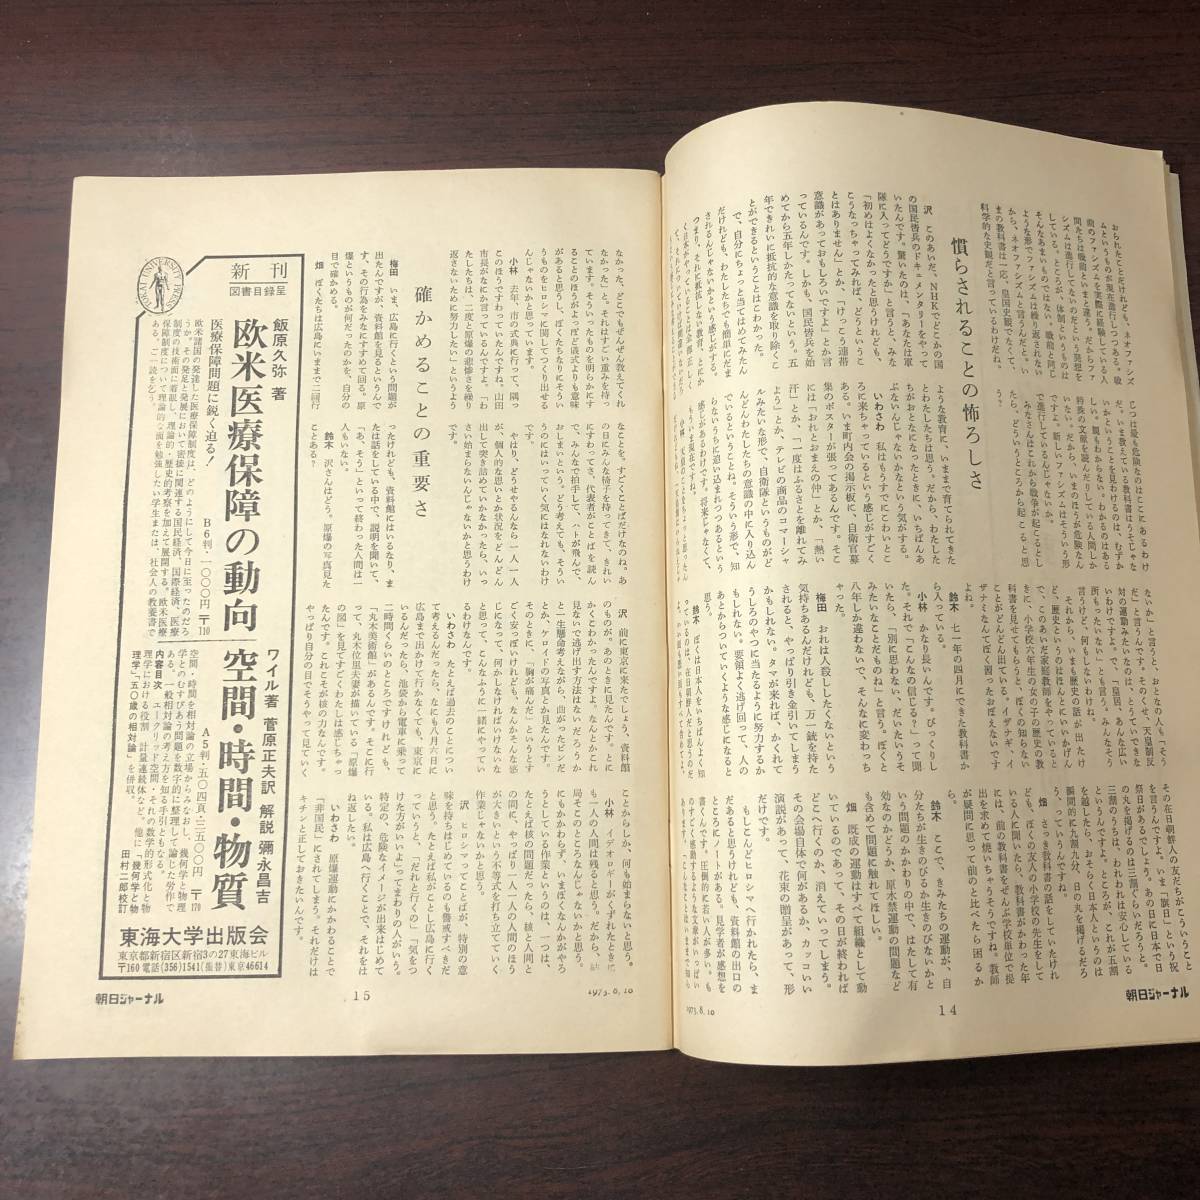 A01【ゆうメール送料無料】朝日ジャーナル 1973年8月10日号 VOL.15 NO.31の画像5